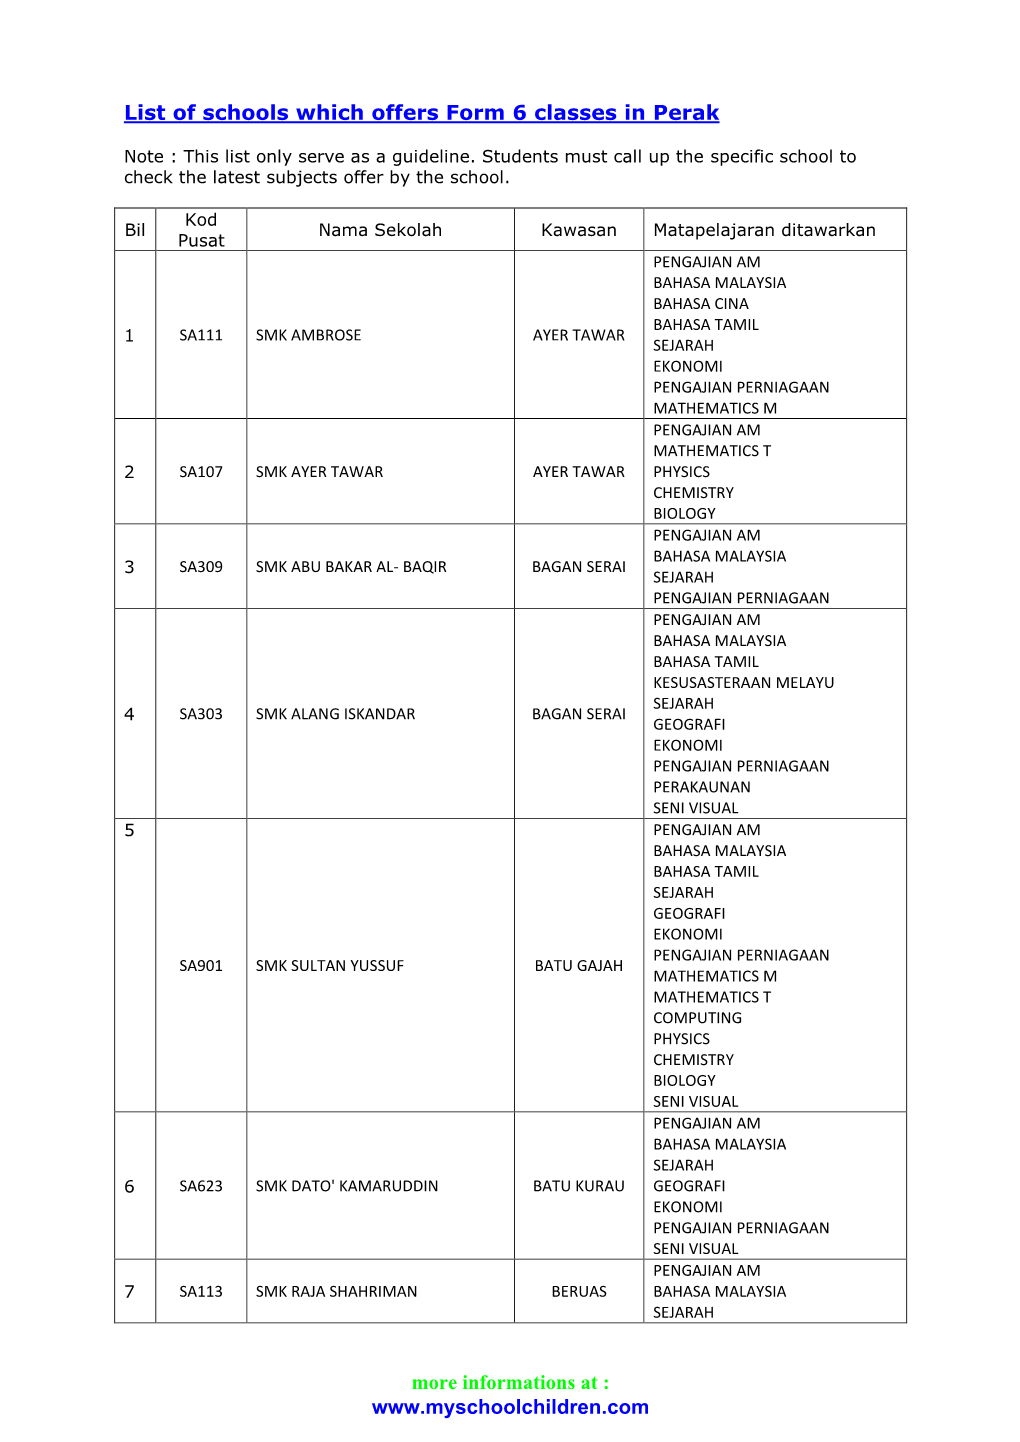 List-Of-Schools-W-Form-6-In-Perak.Pdf